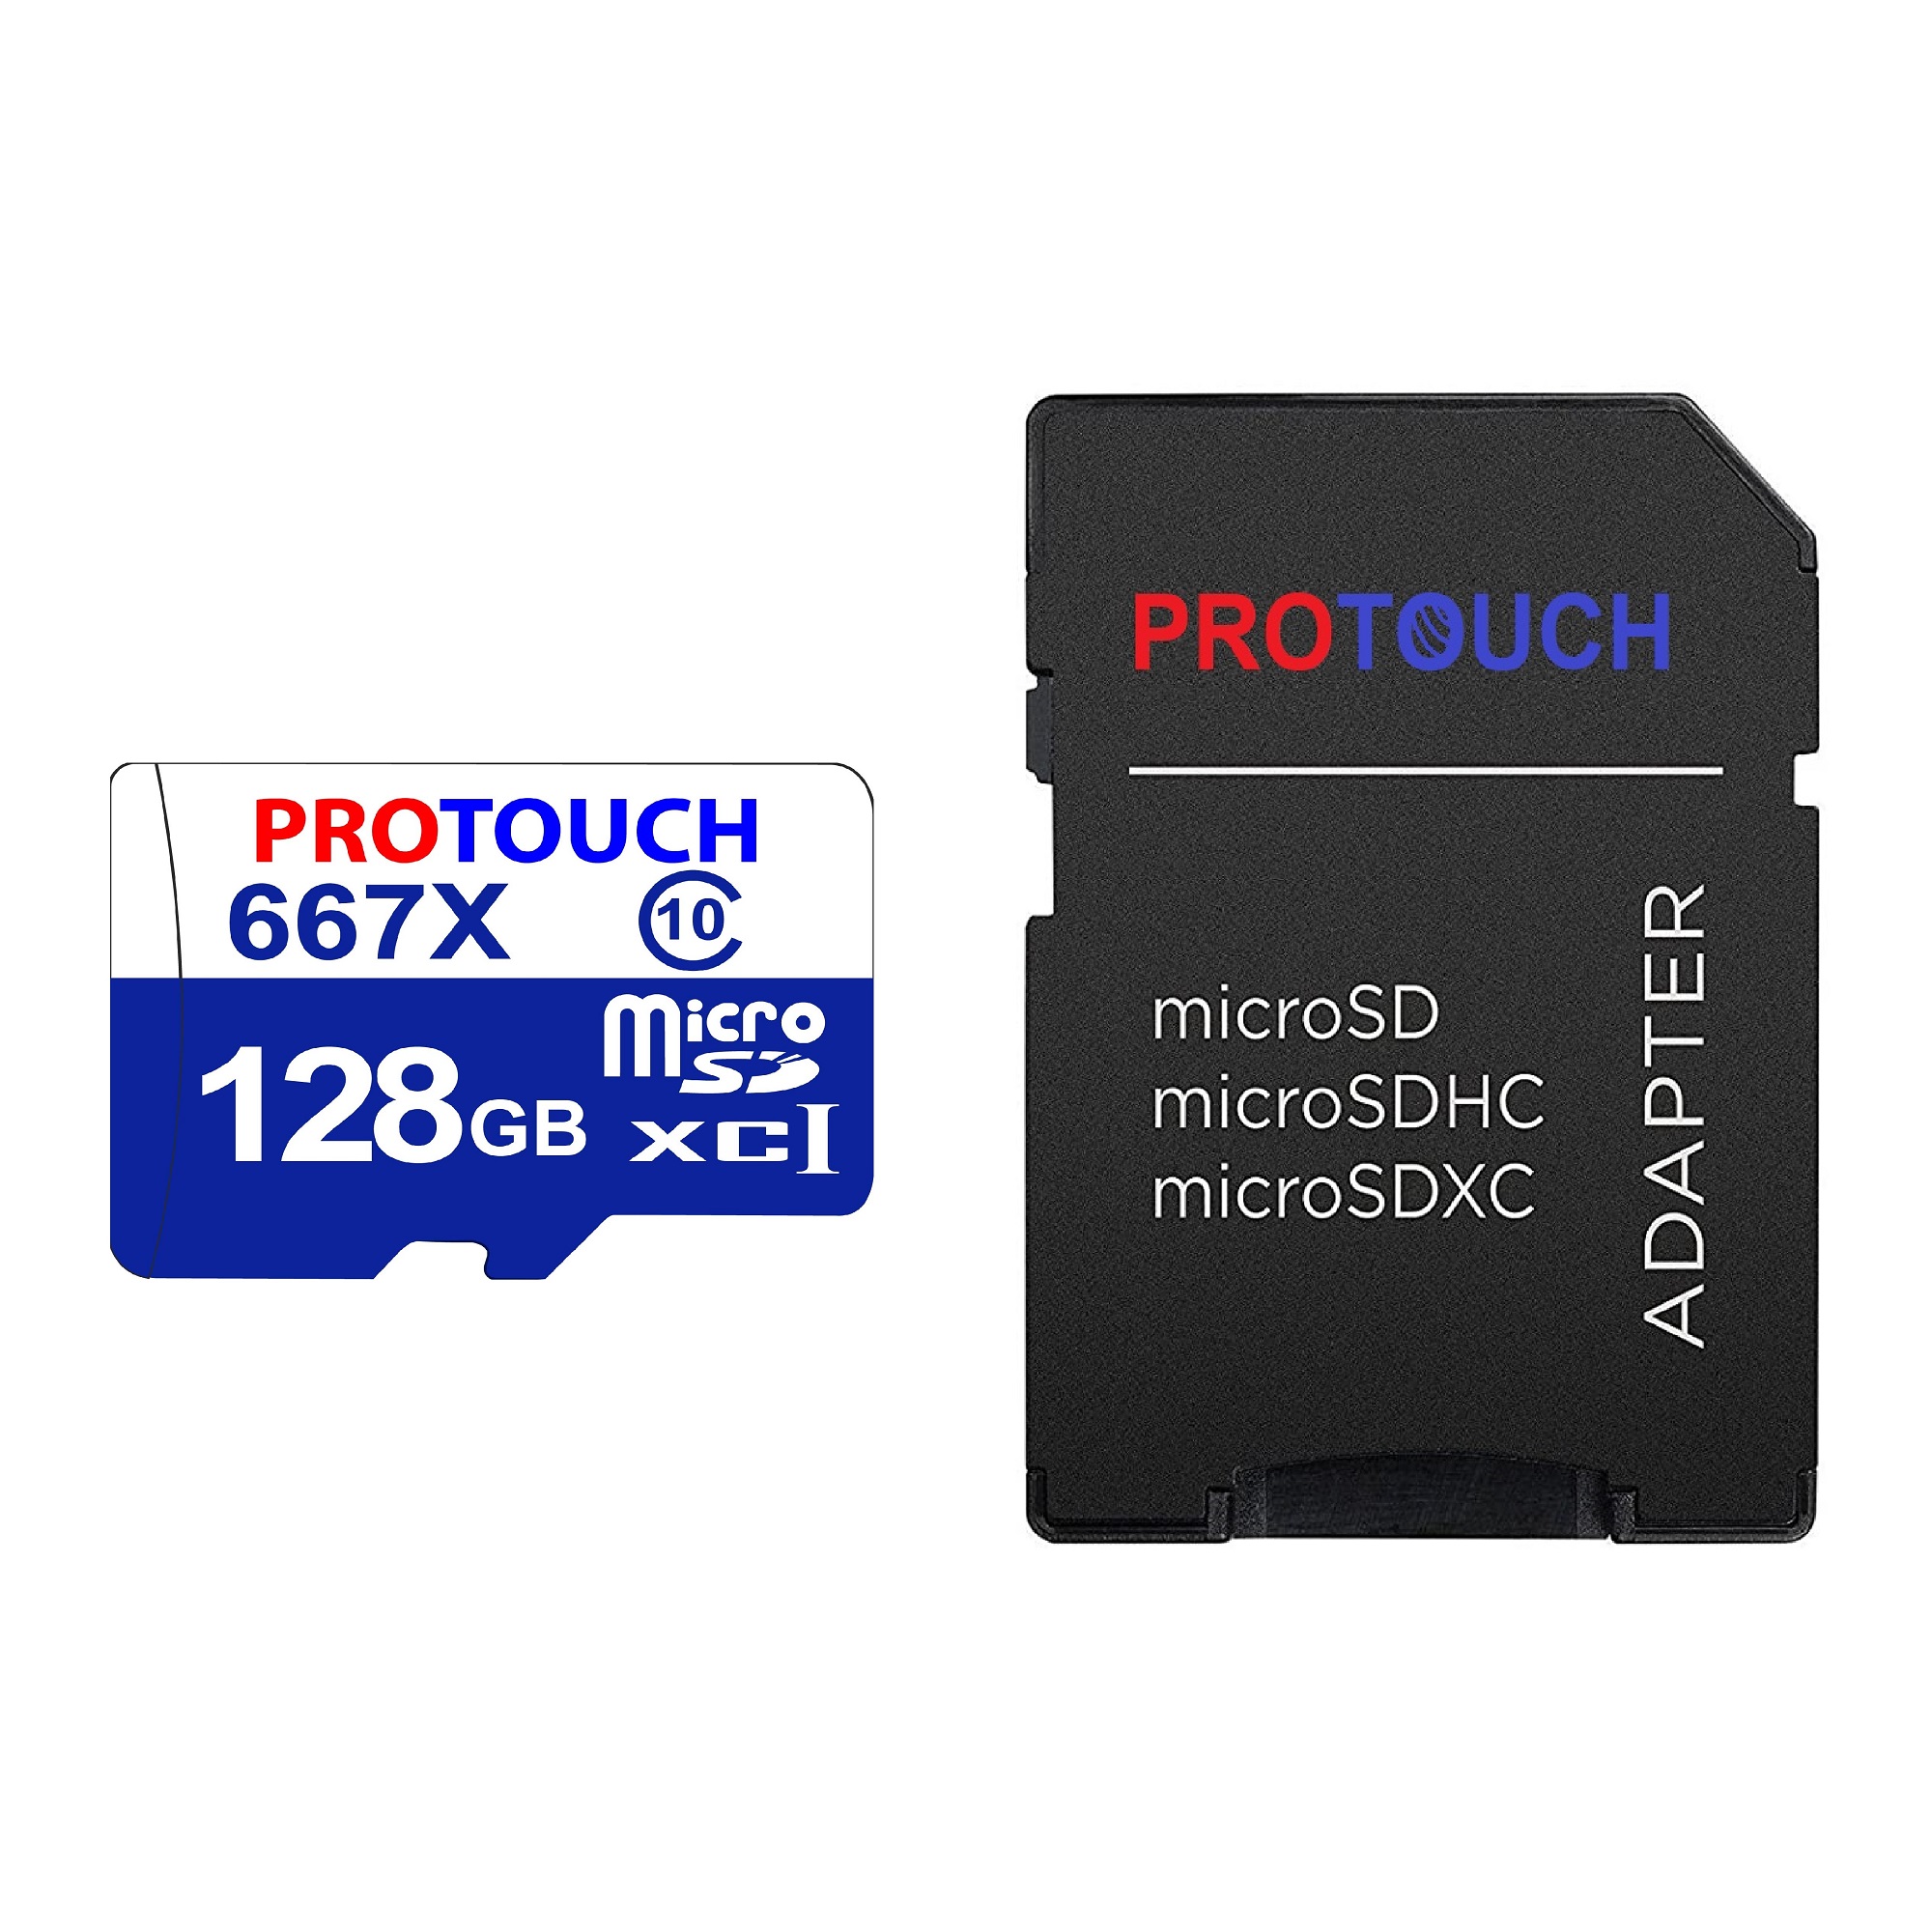 کارت حافظه microSDXC پروتاچ مدل ULTRA کلاس 10 استاندارد UHS-1 U3 سرعت 120MBps ظرفیت 128 گیگابایت به همراه آداپتور SD